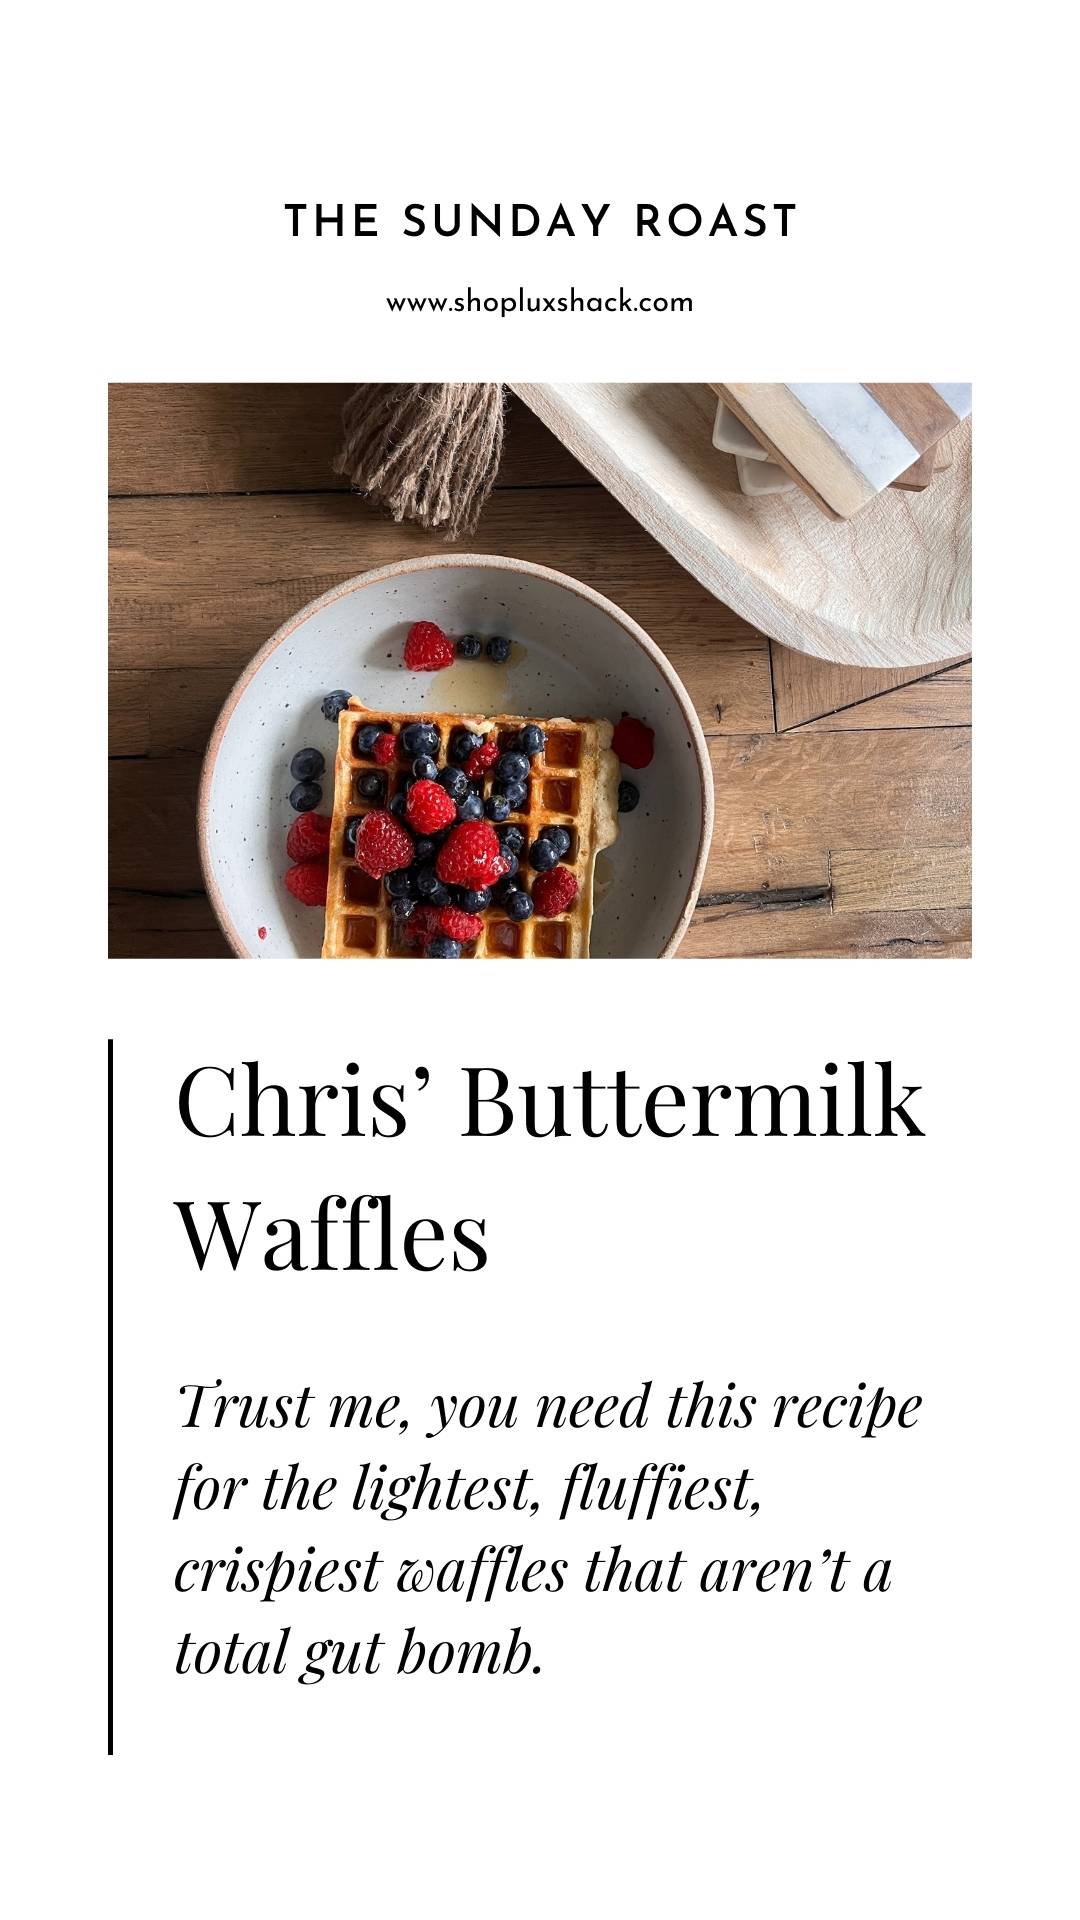 Chris' Buttermilk Waffles